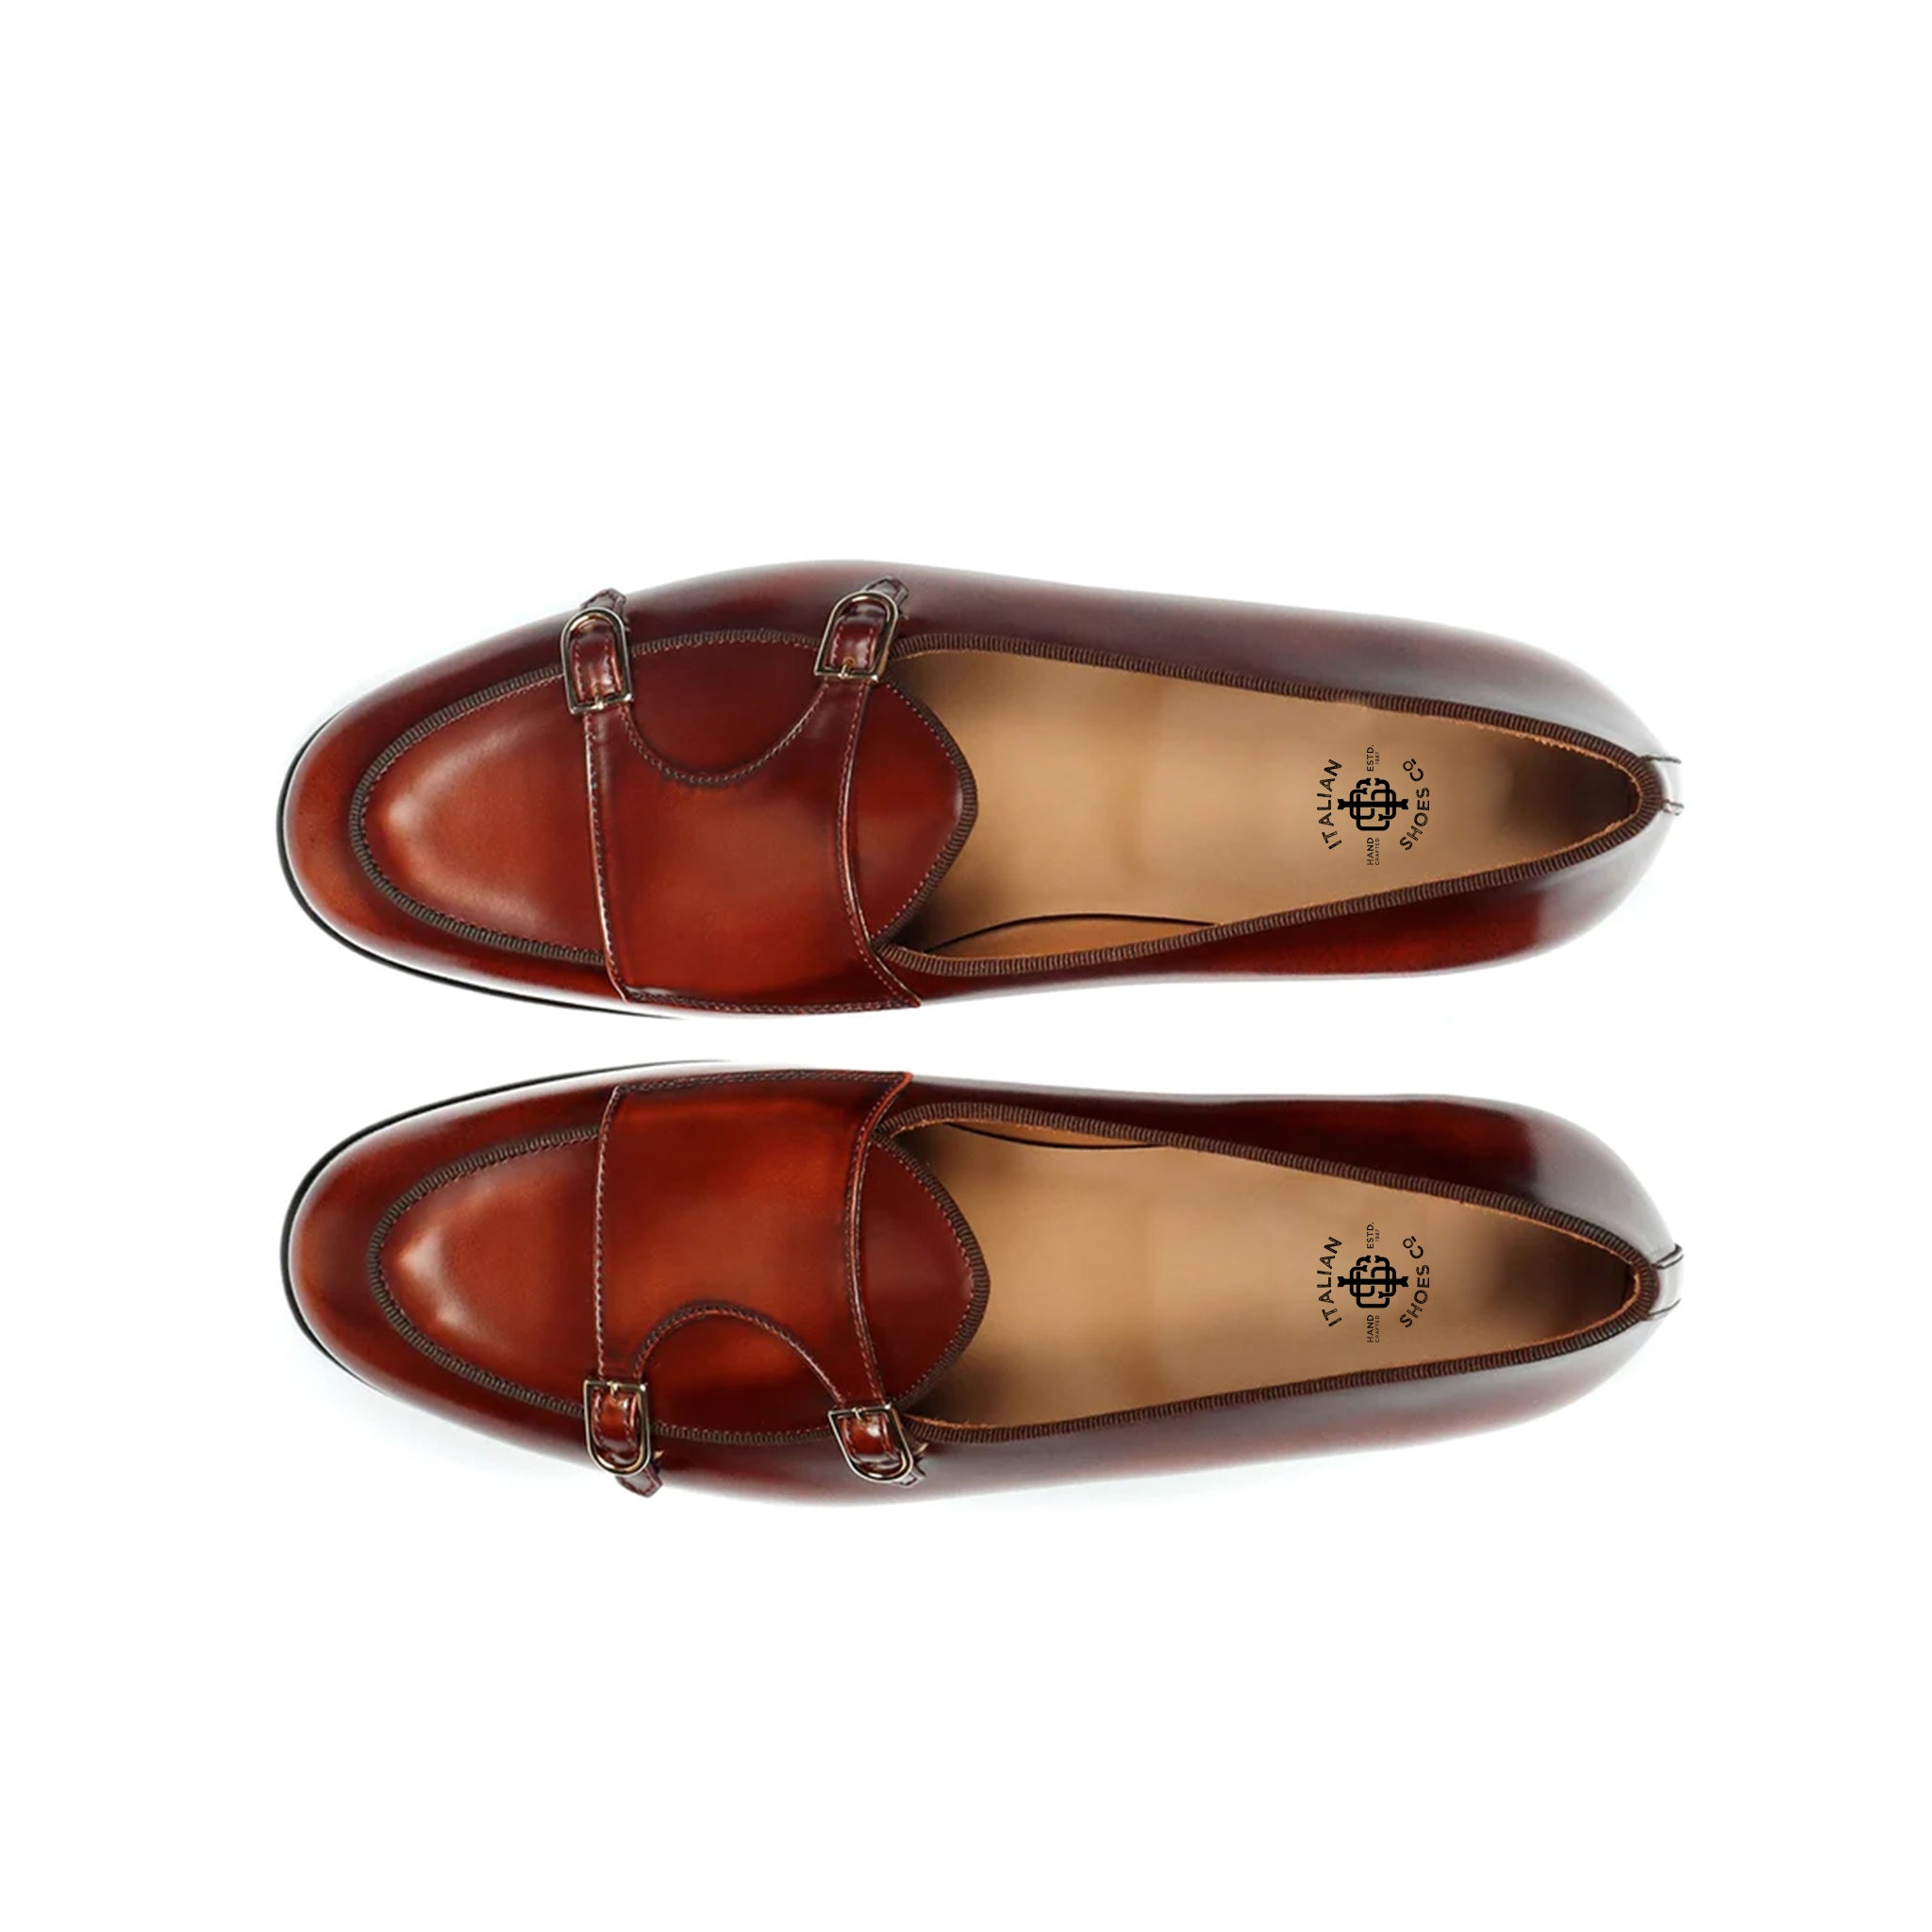 Vivid Auburn Double Monk Strap Shoes